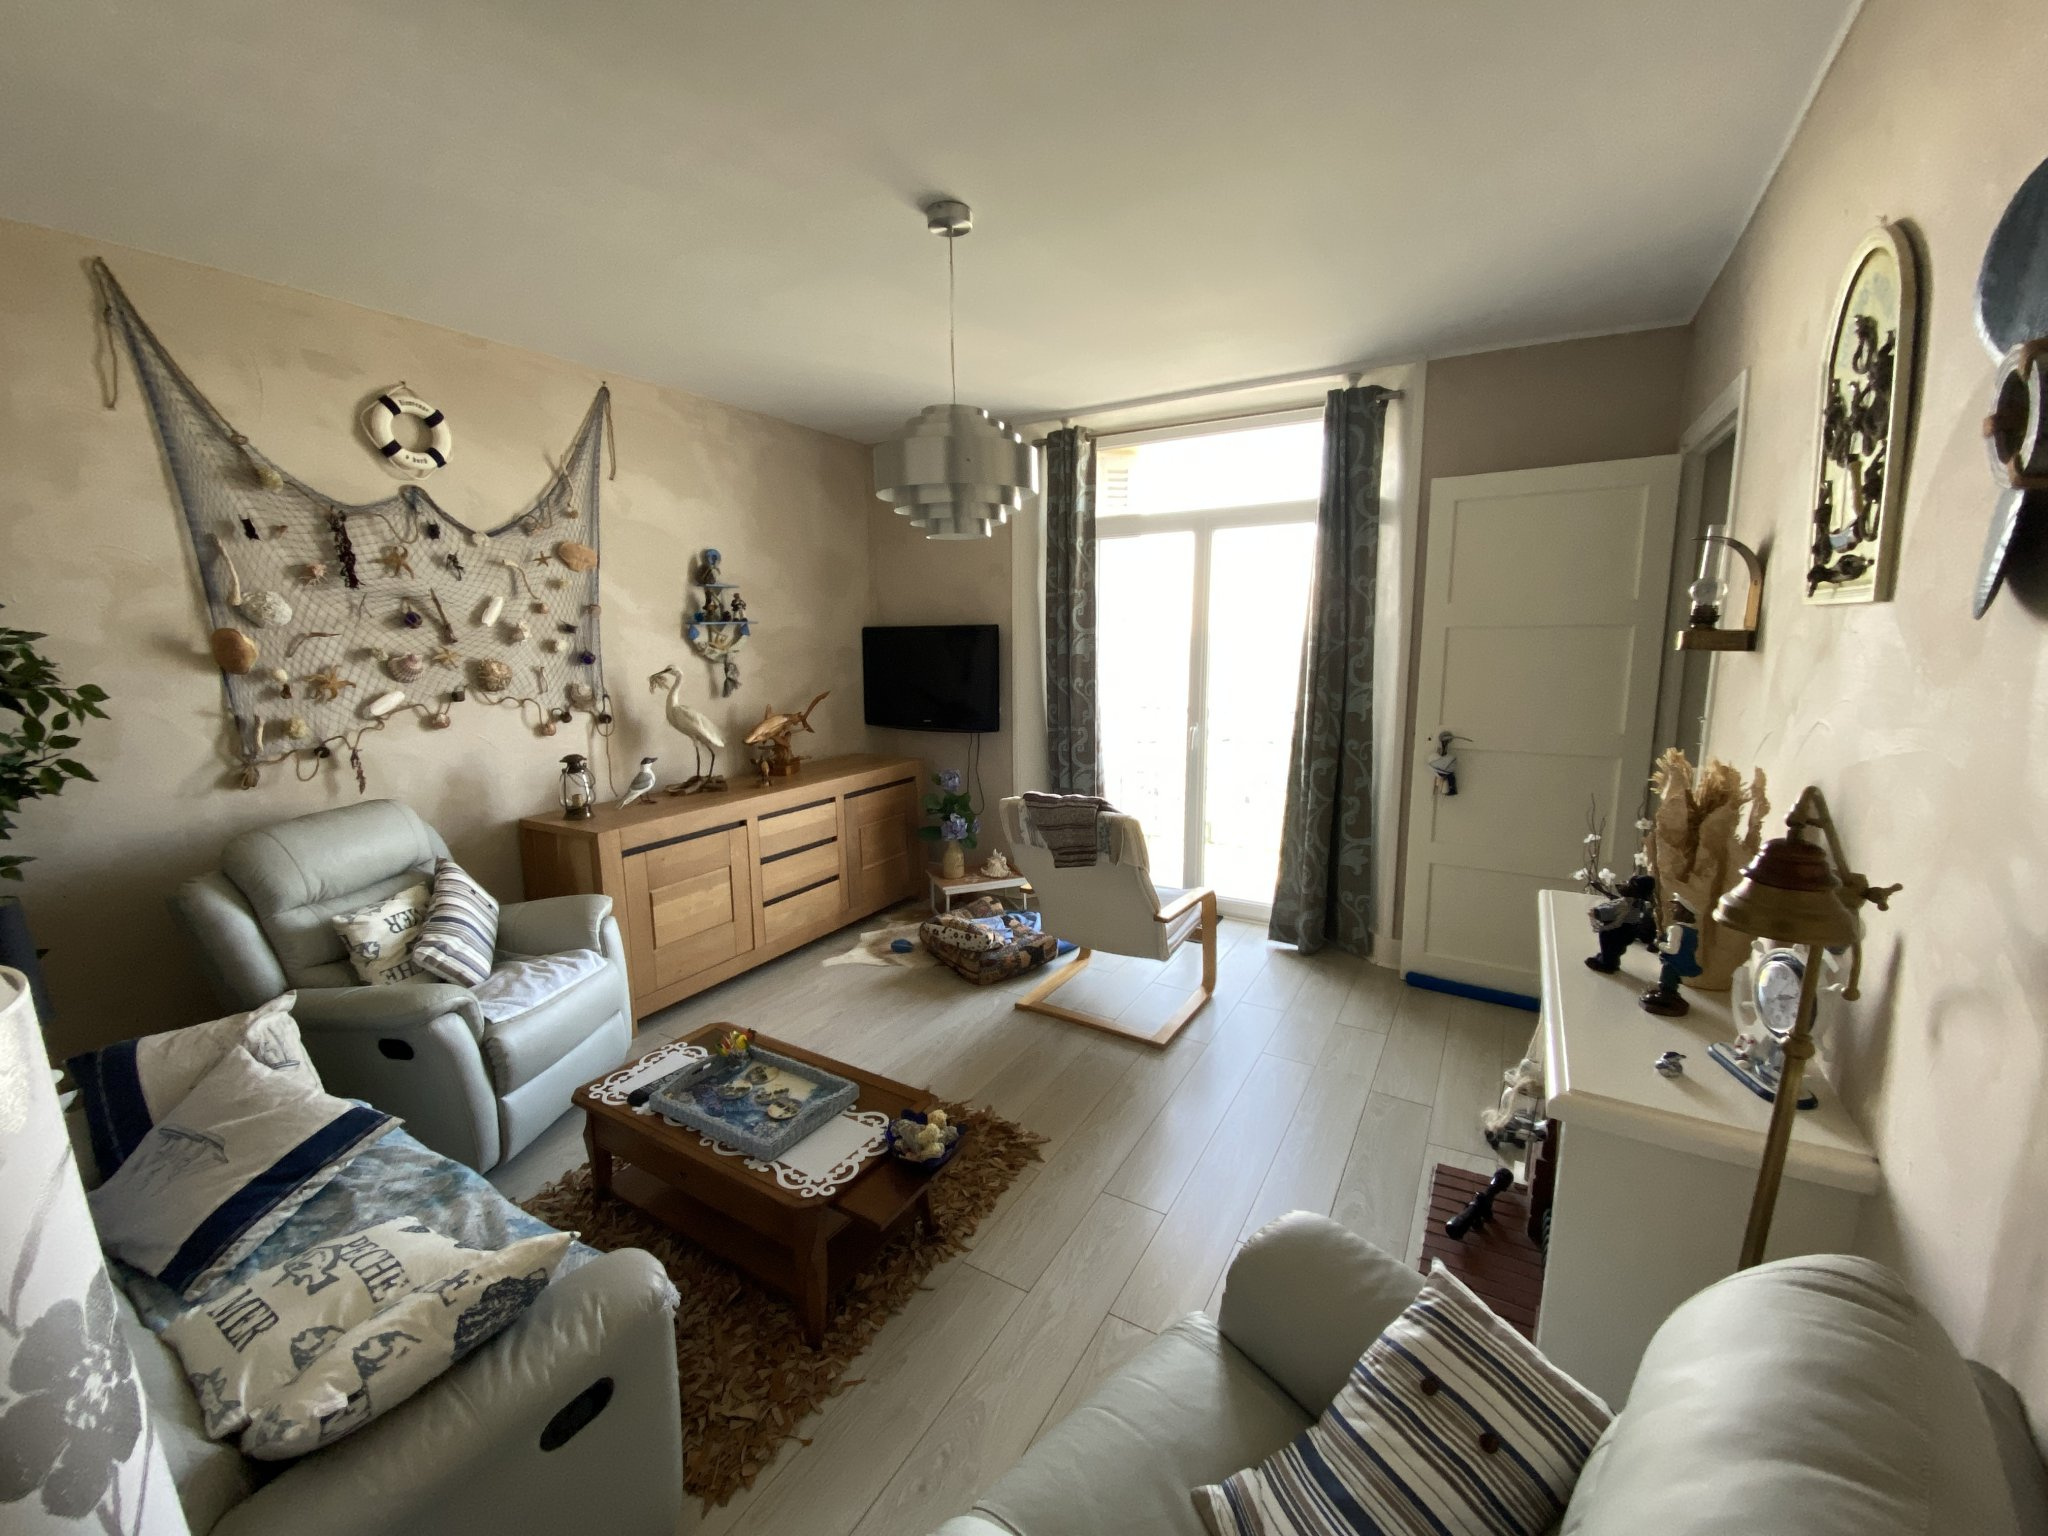 À Dieppe (76), appartement à acheter pour famille avec enfan